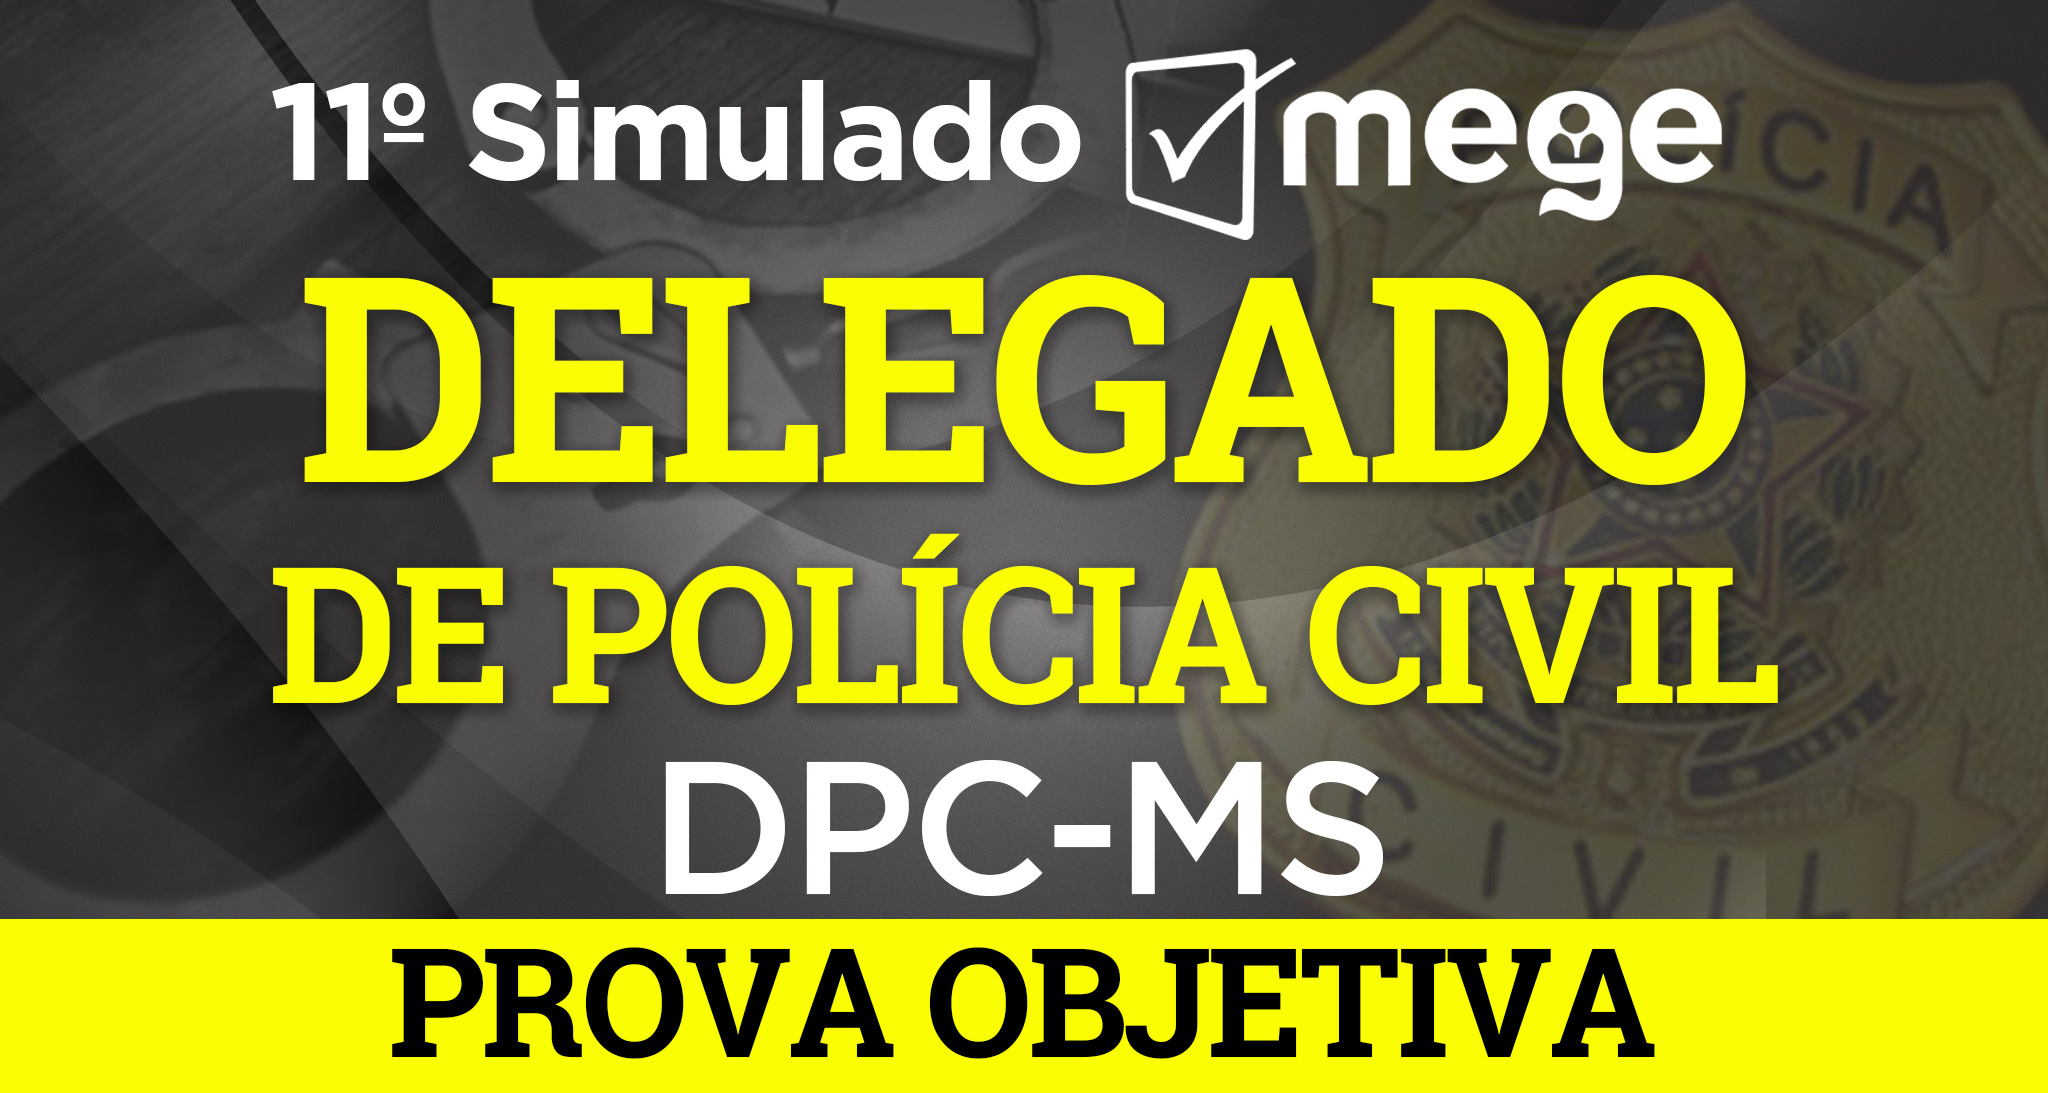 11º Simulado Mege (1º fase, Delegado de Polícia Civil -MS)